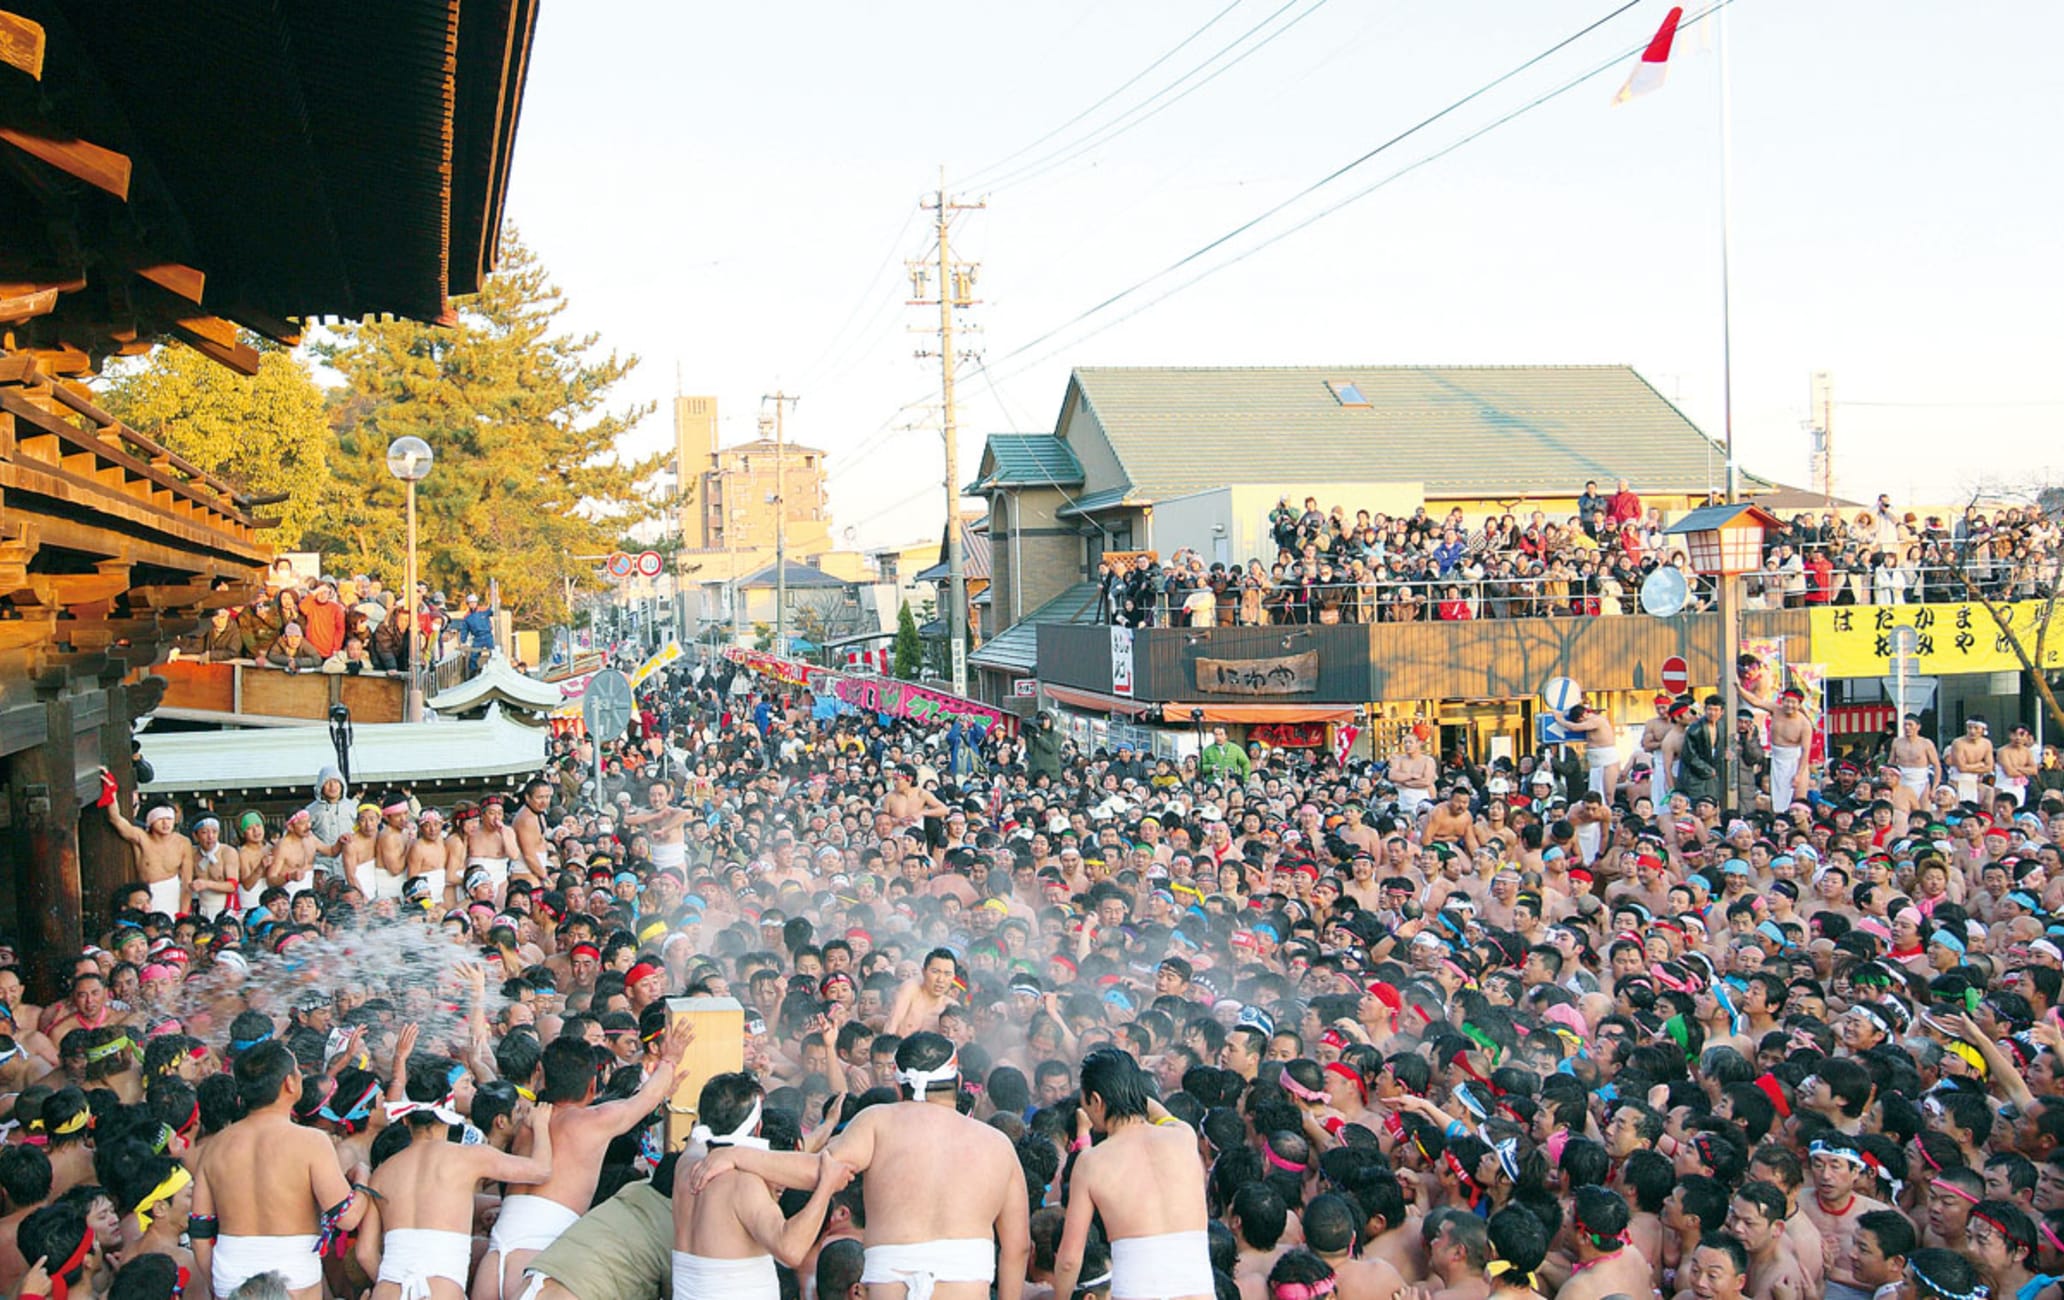 Nude festival